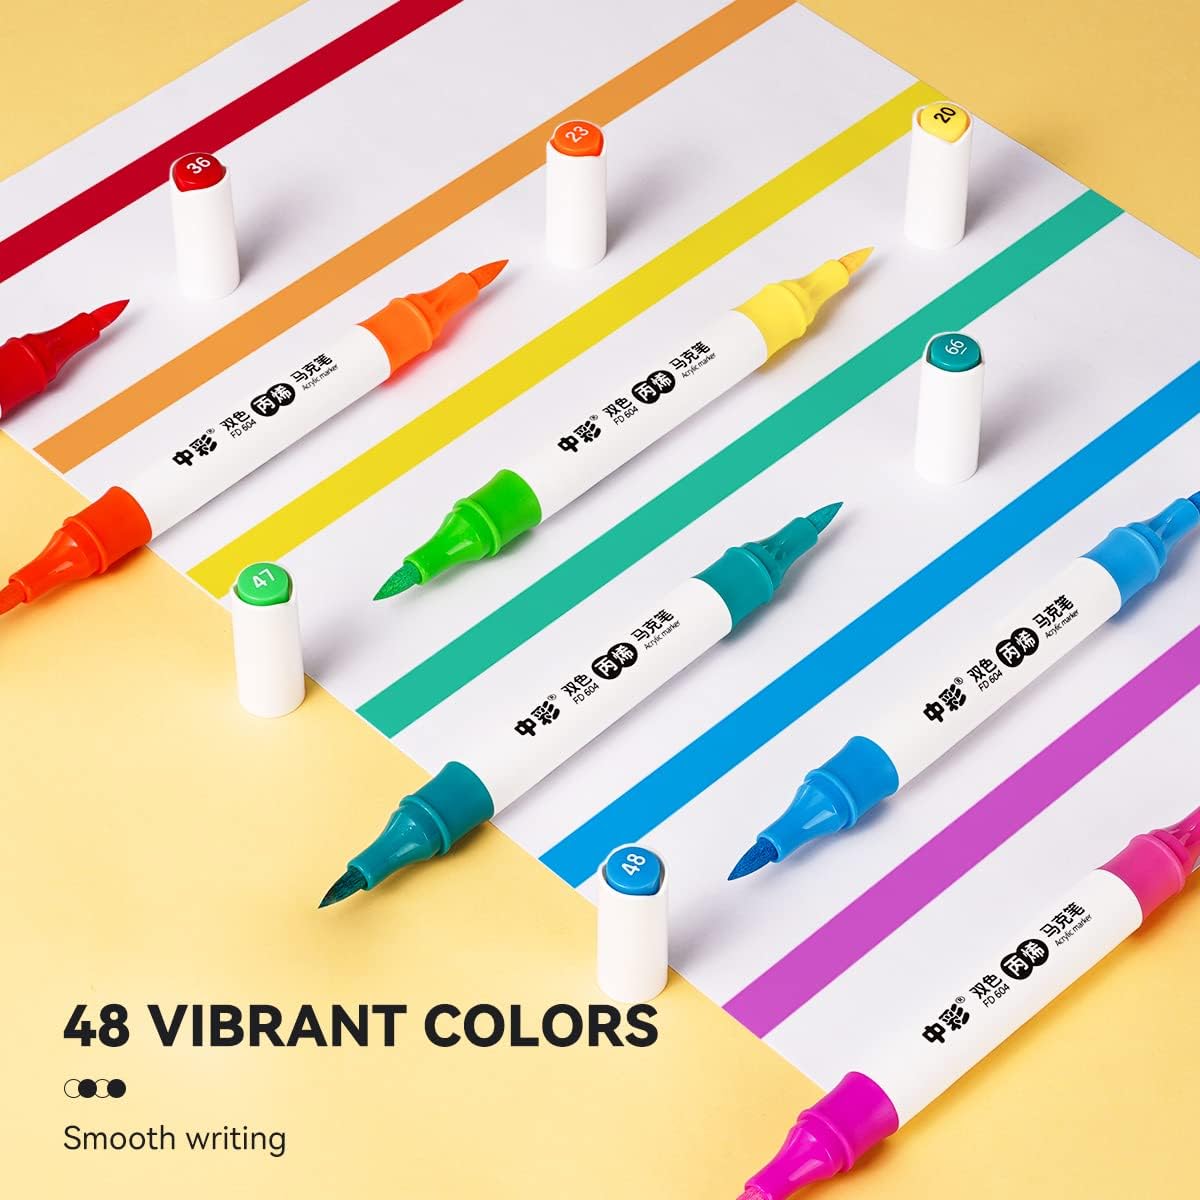 Lightwish Acrylfarbenmarker in 48 Farben, verbesserte Doppelspitze und Acrylfarbenstifte in zwei Farben